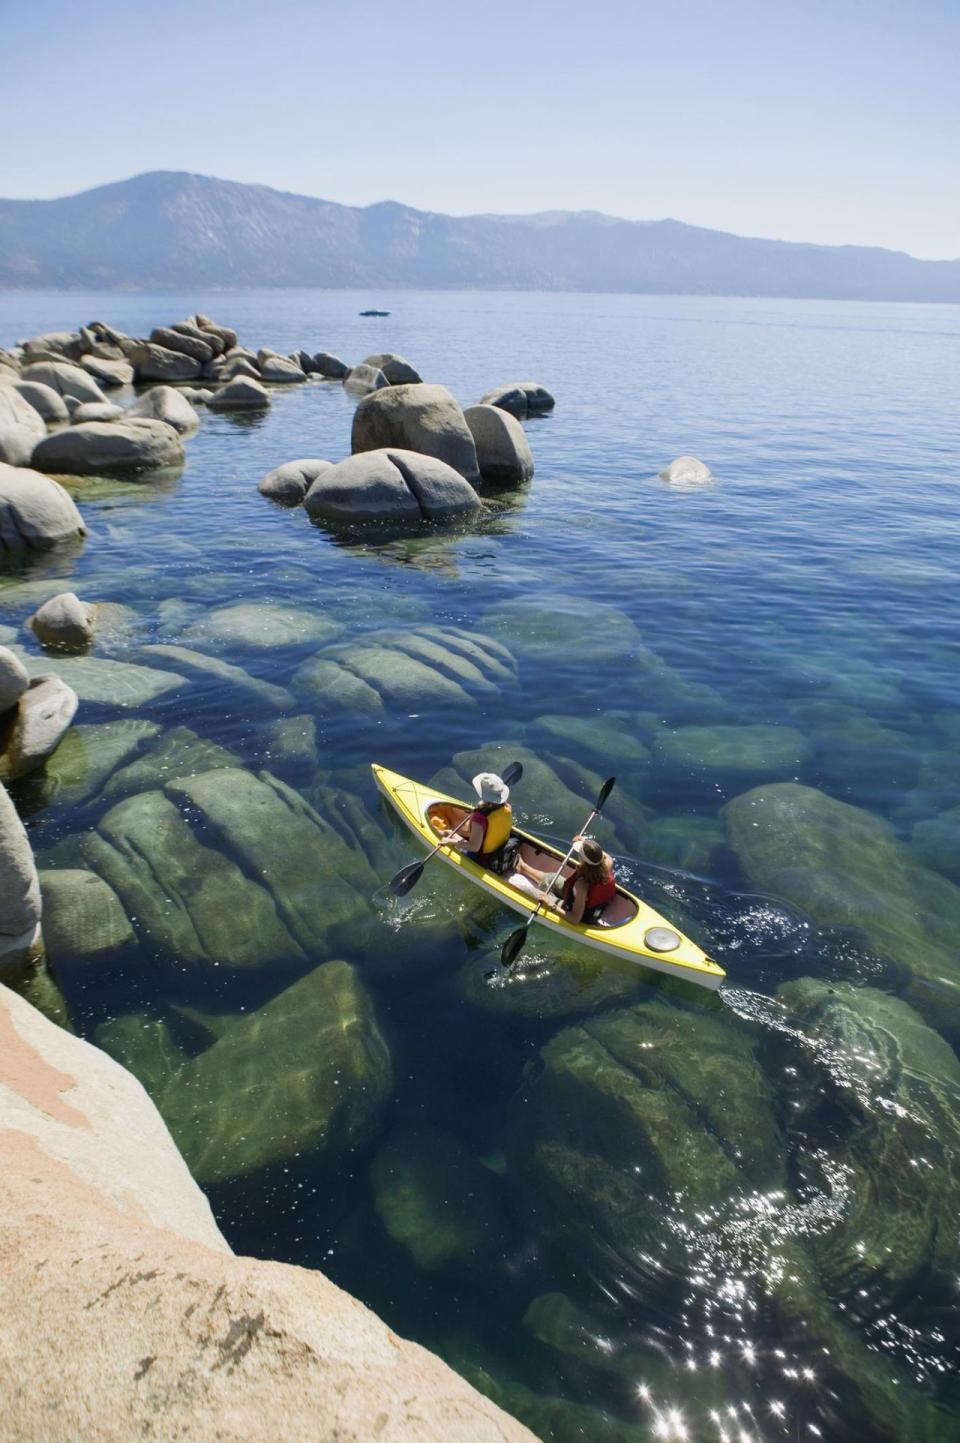 9) Lake Tahoe in California